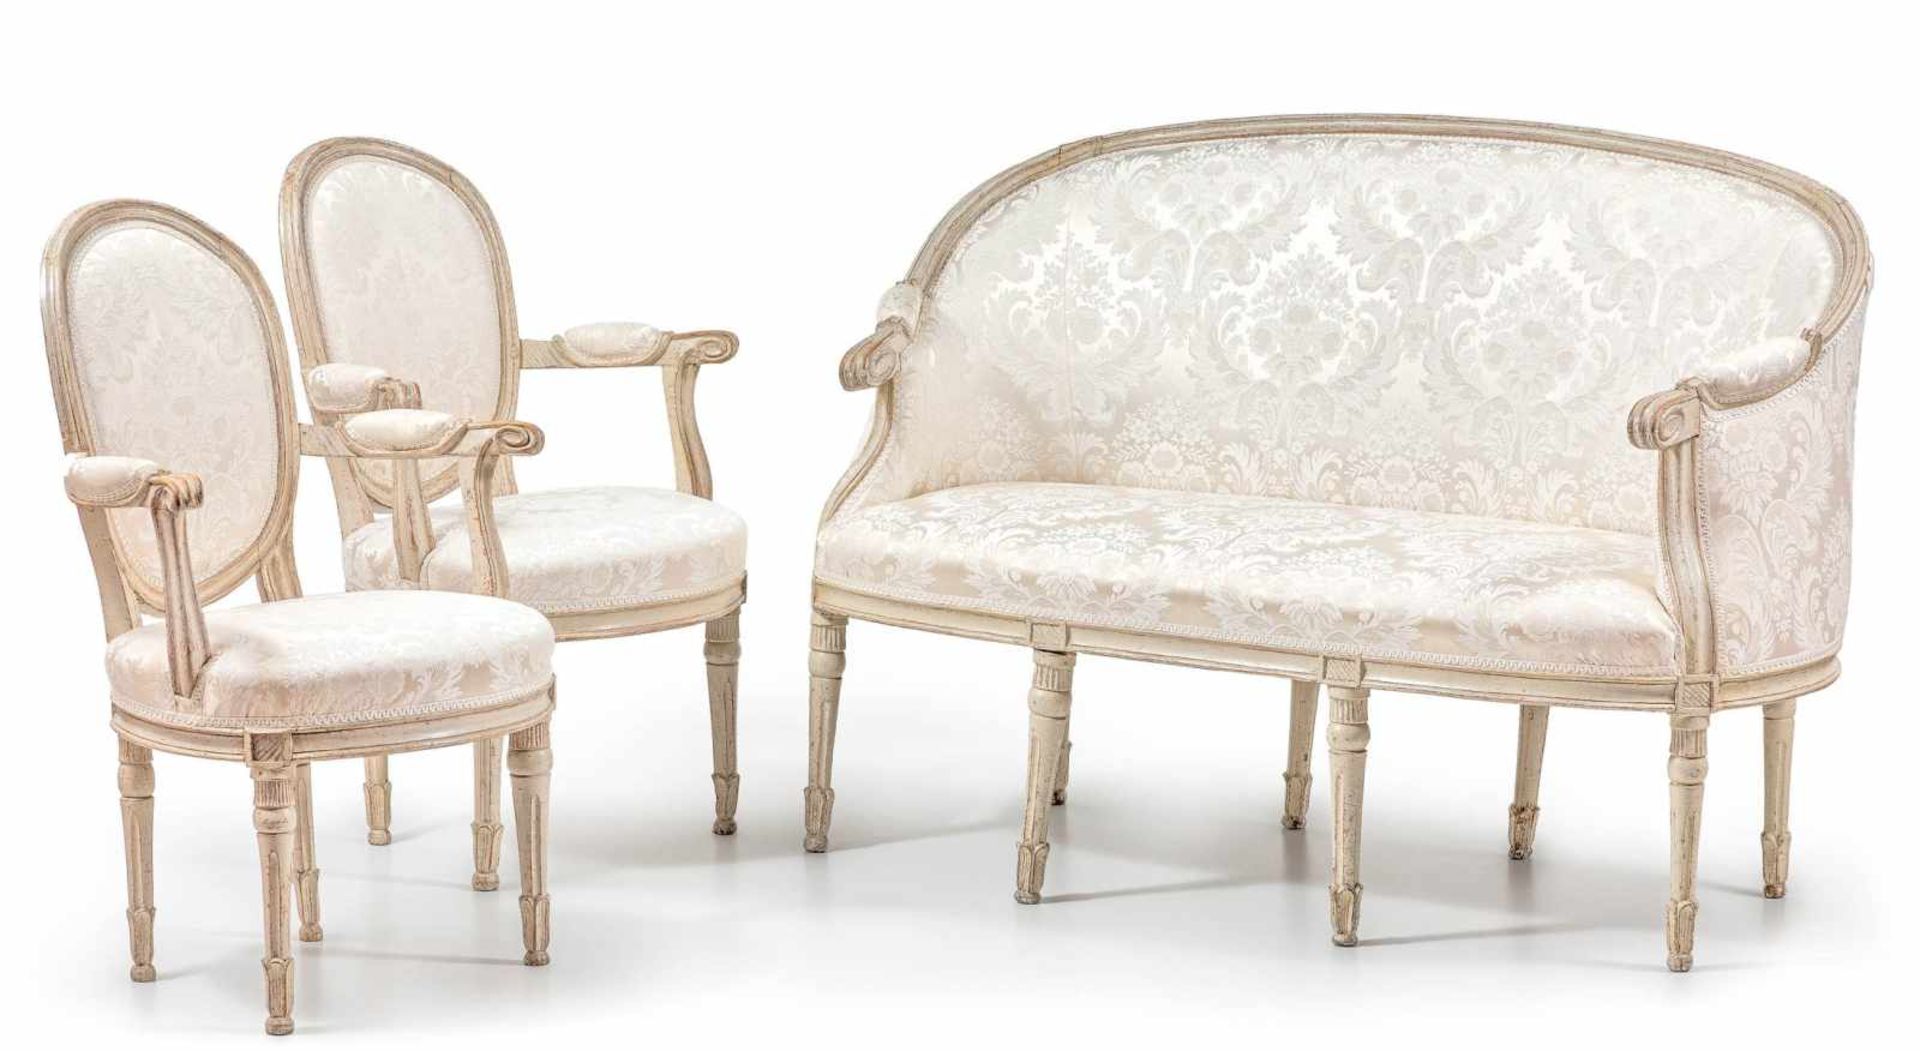 Louis-XVI-Sitzgarniturwohl 18. Jh. Holz, grau gefasst. Sitzbank und zwei passende Armlehnstühle.